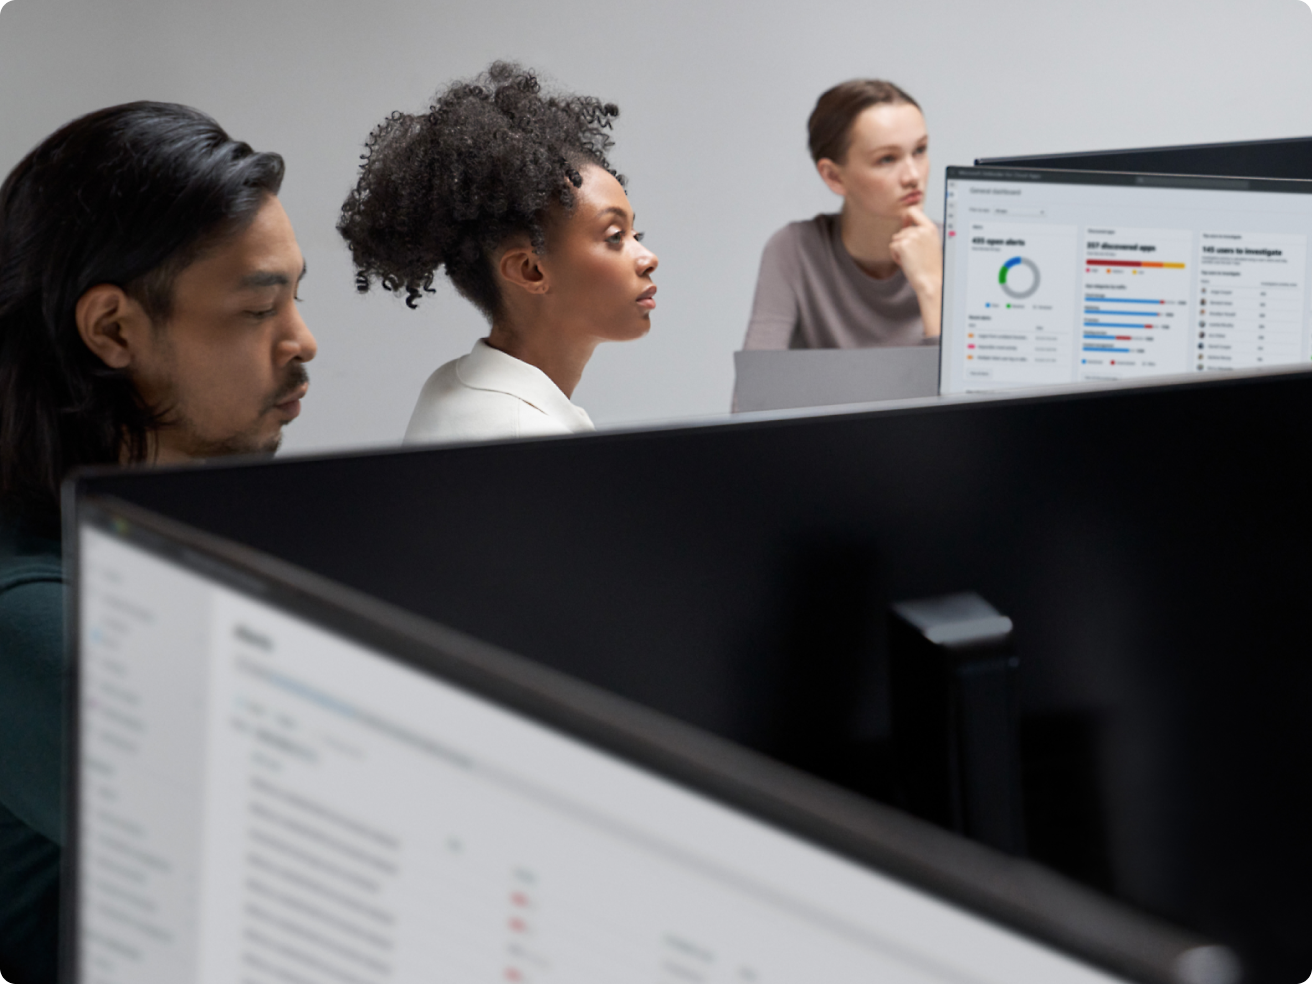 Três funcionários do escritório se concentram em telas de computador exibindo gráficos e dados em um ambiente moderno de escritório.